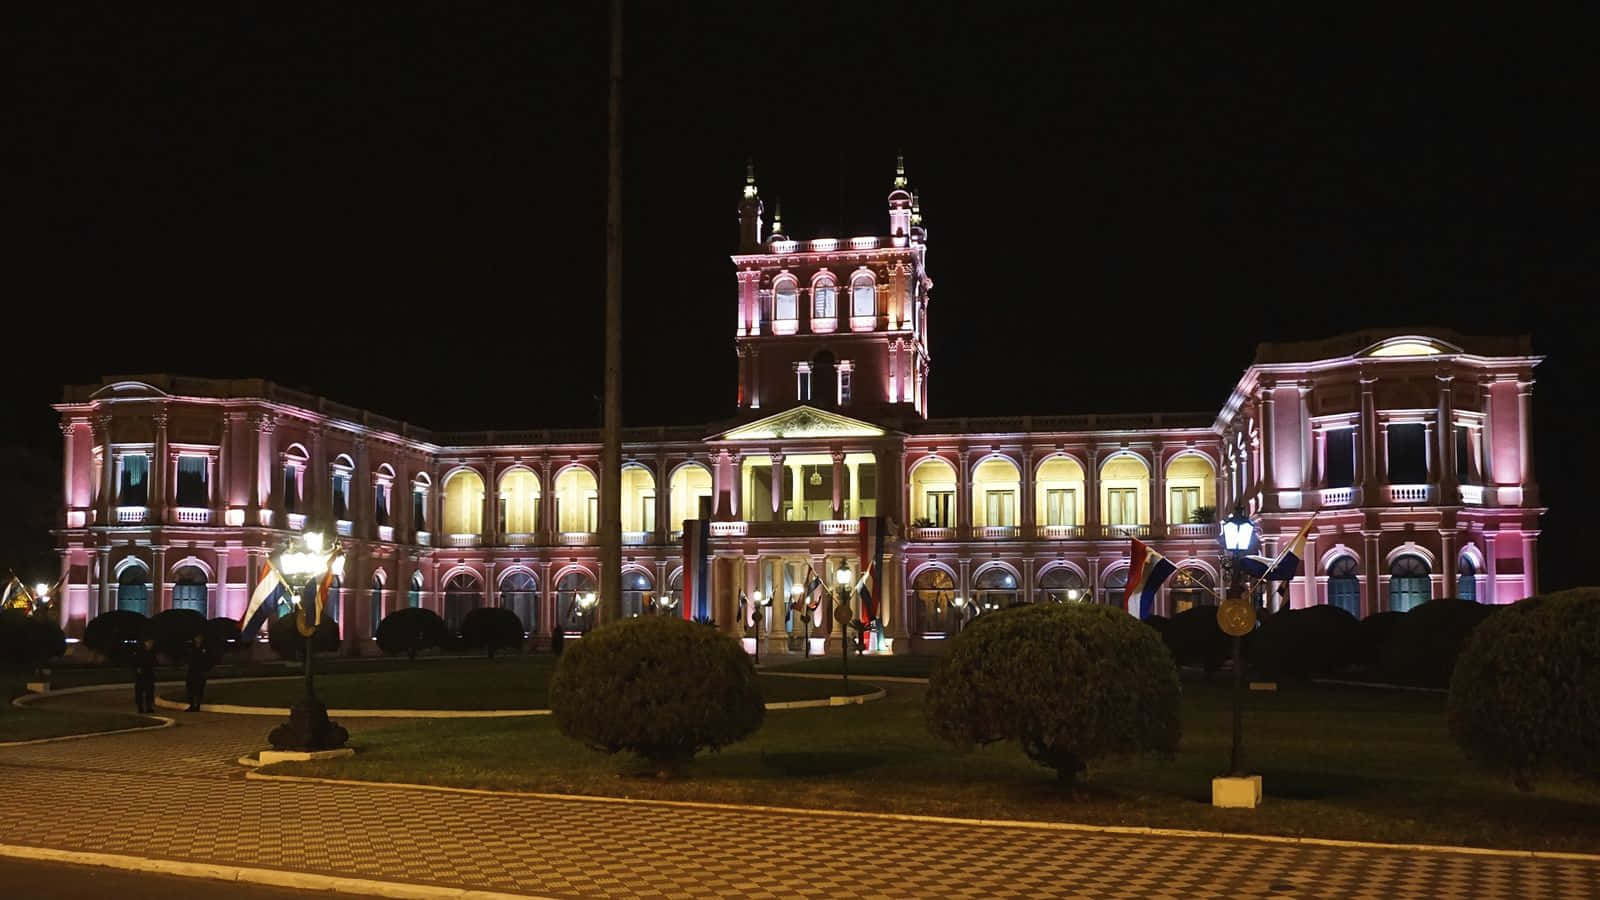 Palacio De Lopez In Asuincion At Night Wallpaper